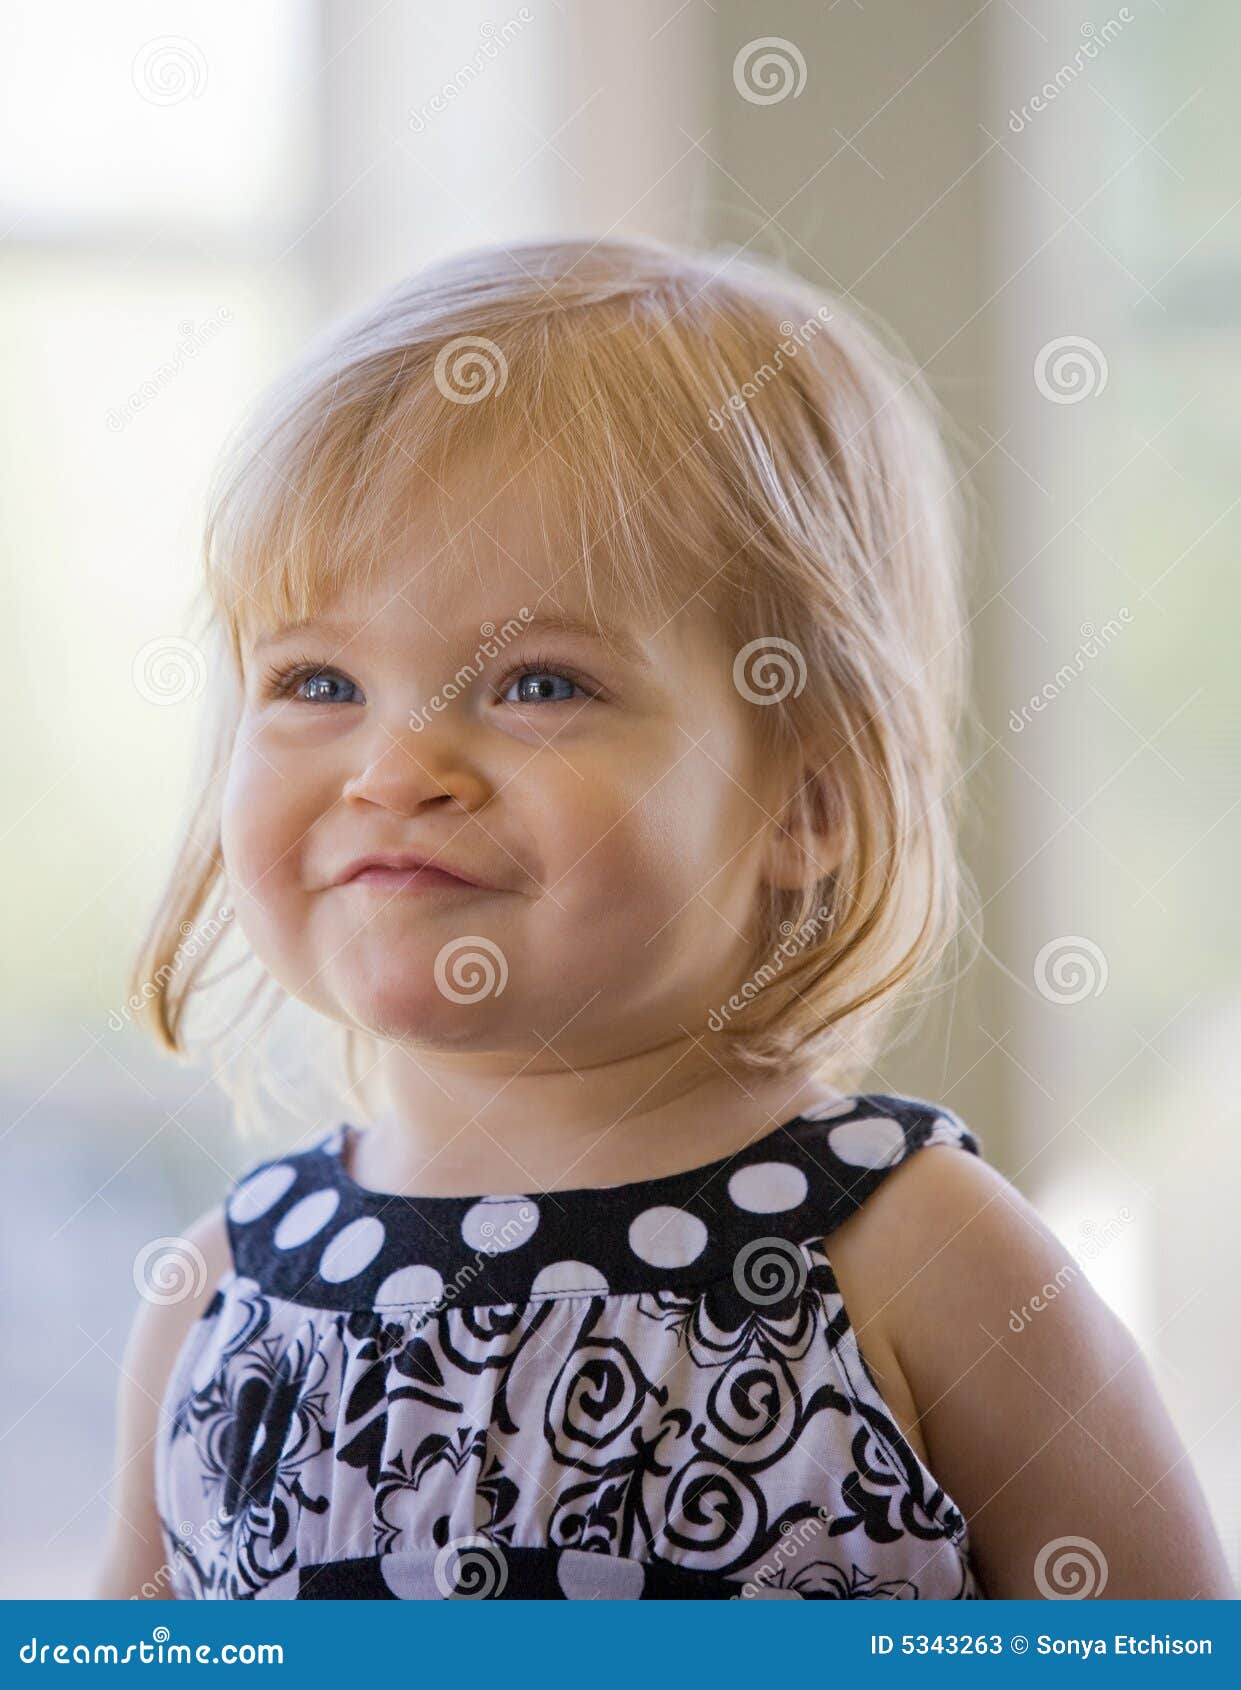 逗人喜爱的婴孩嘻嘻笑 库存图片. 图片 包括有 喜悦, 头发, 使用, 生活, 微笑, 敬慕, 幸福, 场面 - 52623895